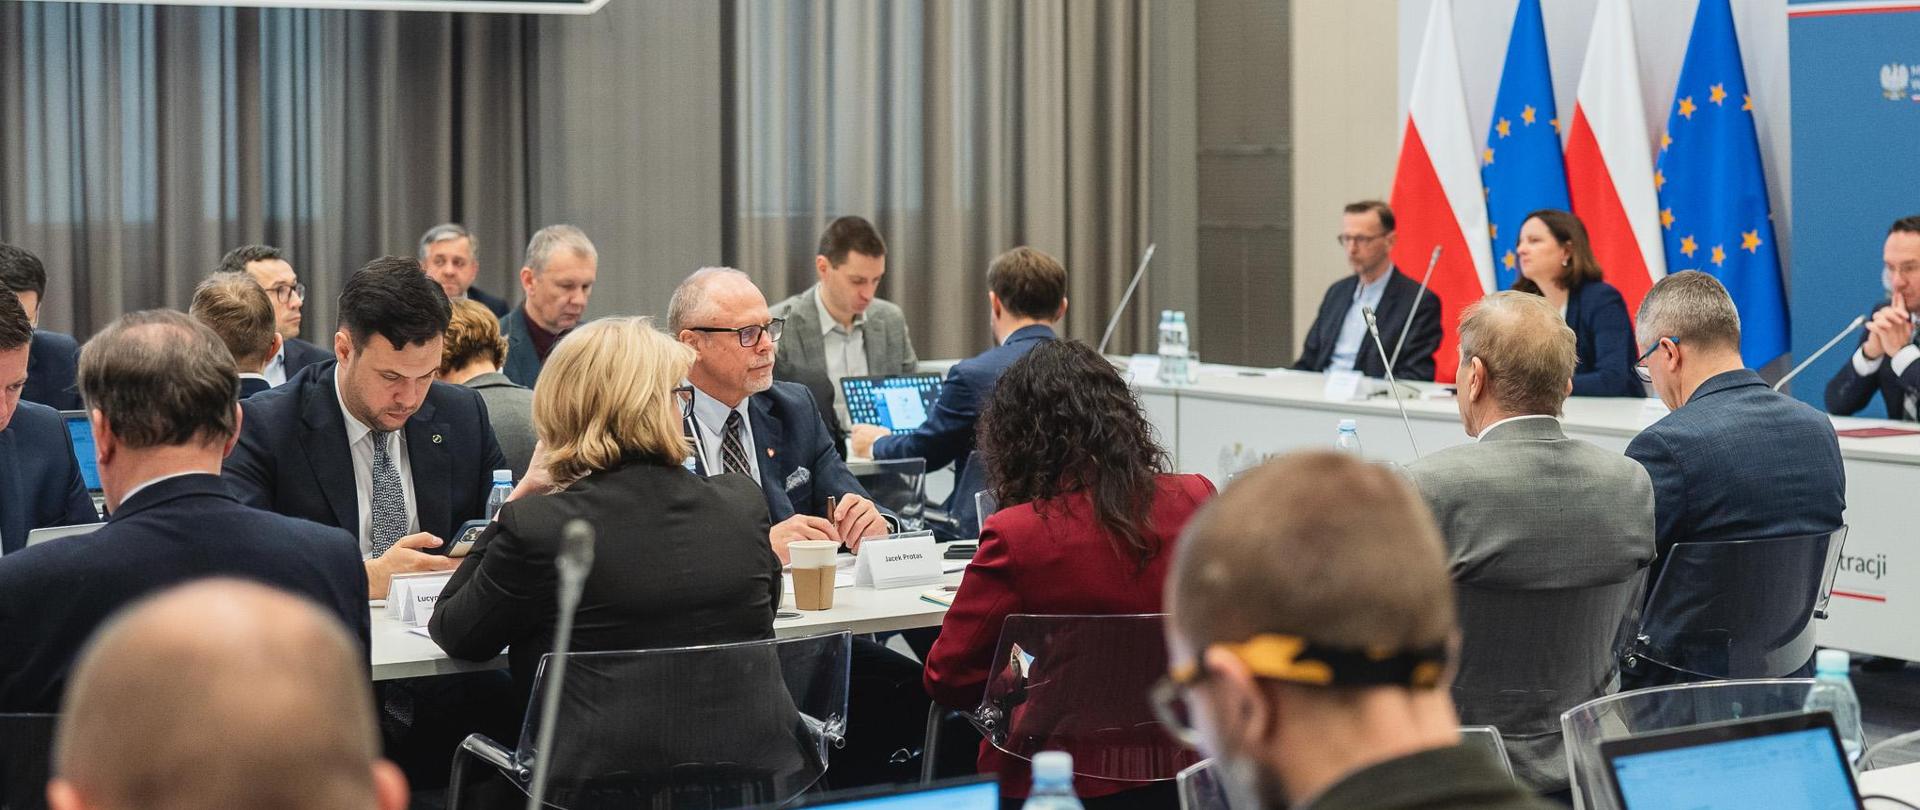 Grupa osób siedzi w sali konferencyjnej przy stołach. W tle flagi PL i UE.